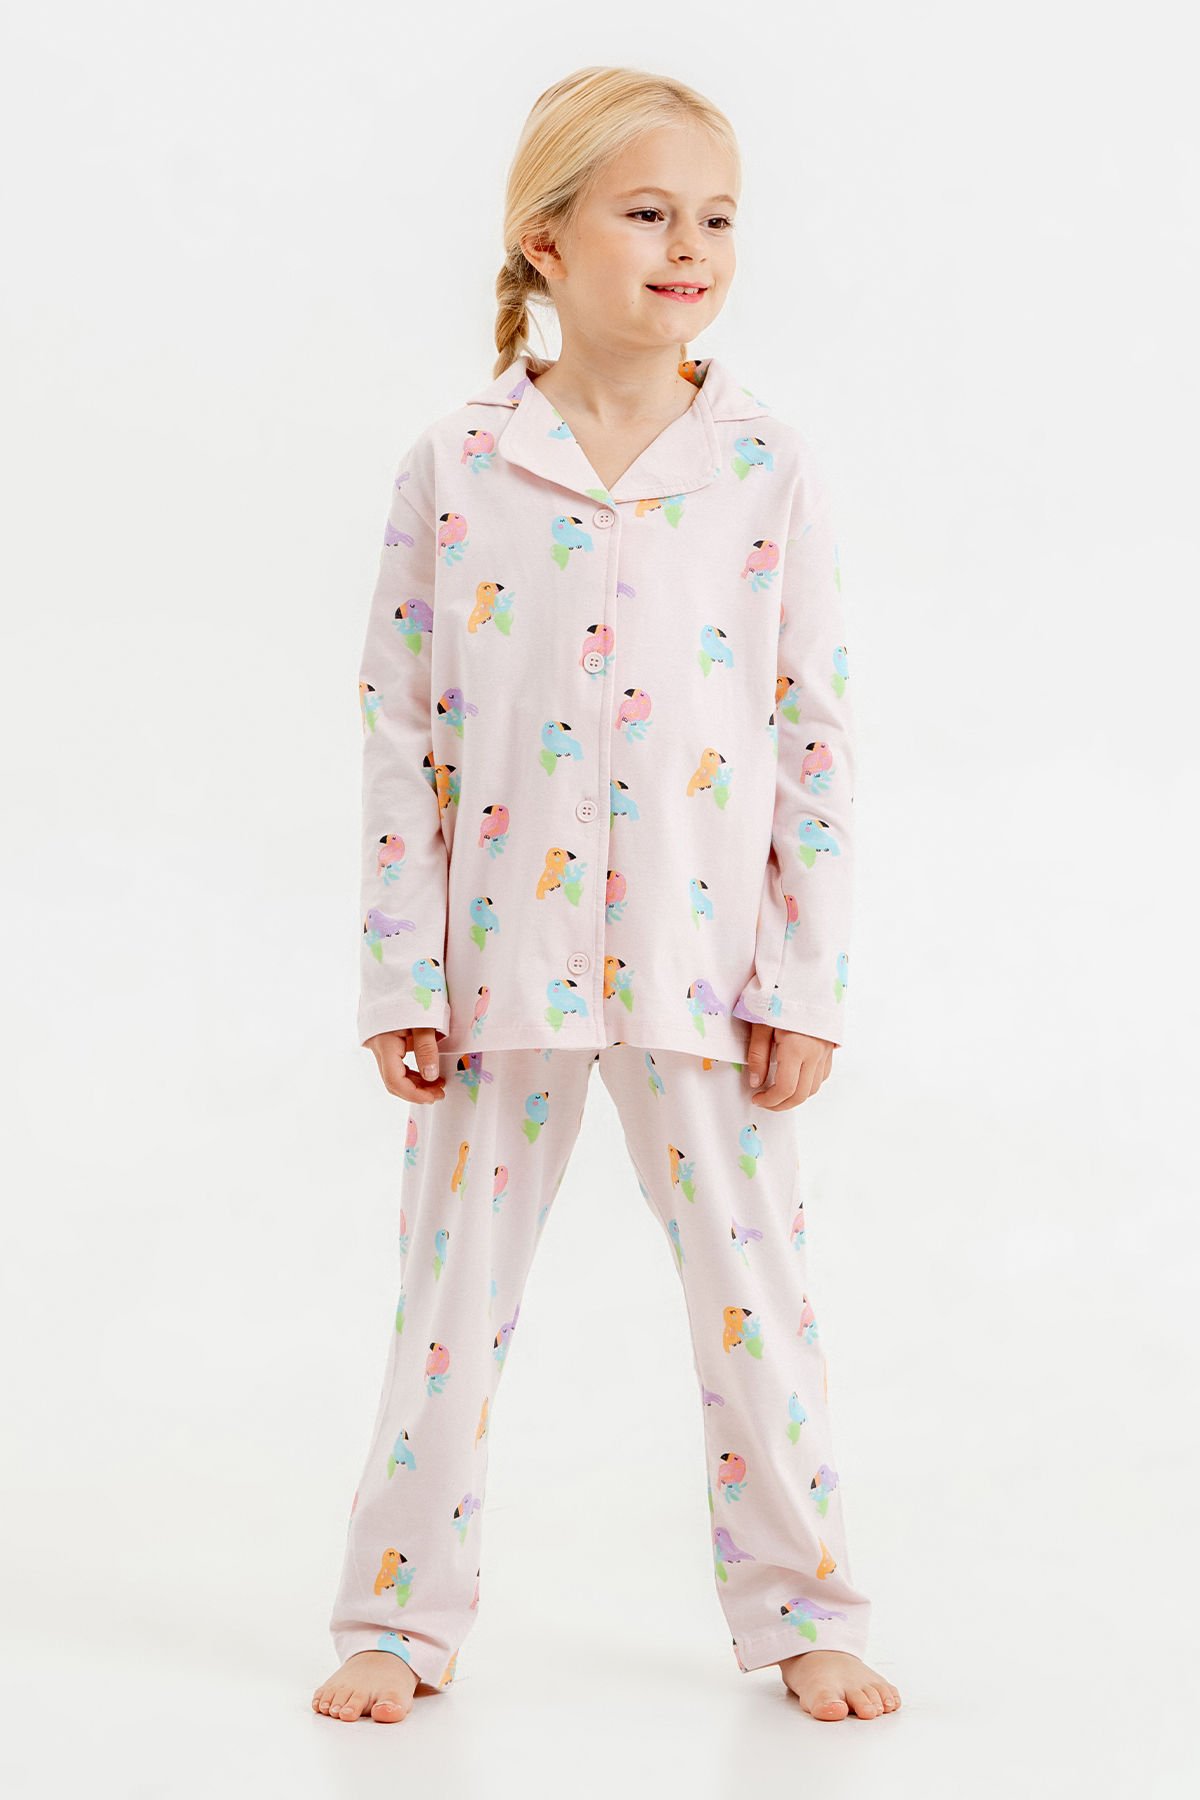 Tuffy Farklı Desenli Kız Çocuk İkili Pijama Takımı-1056